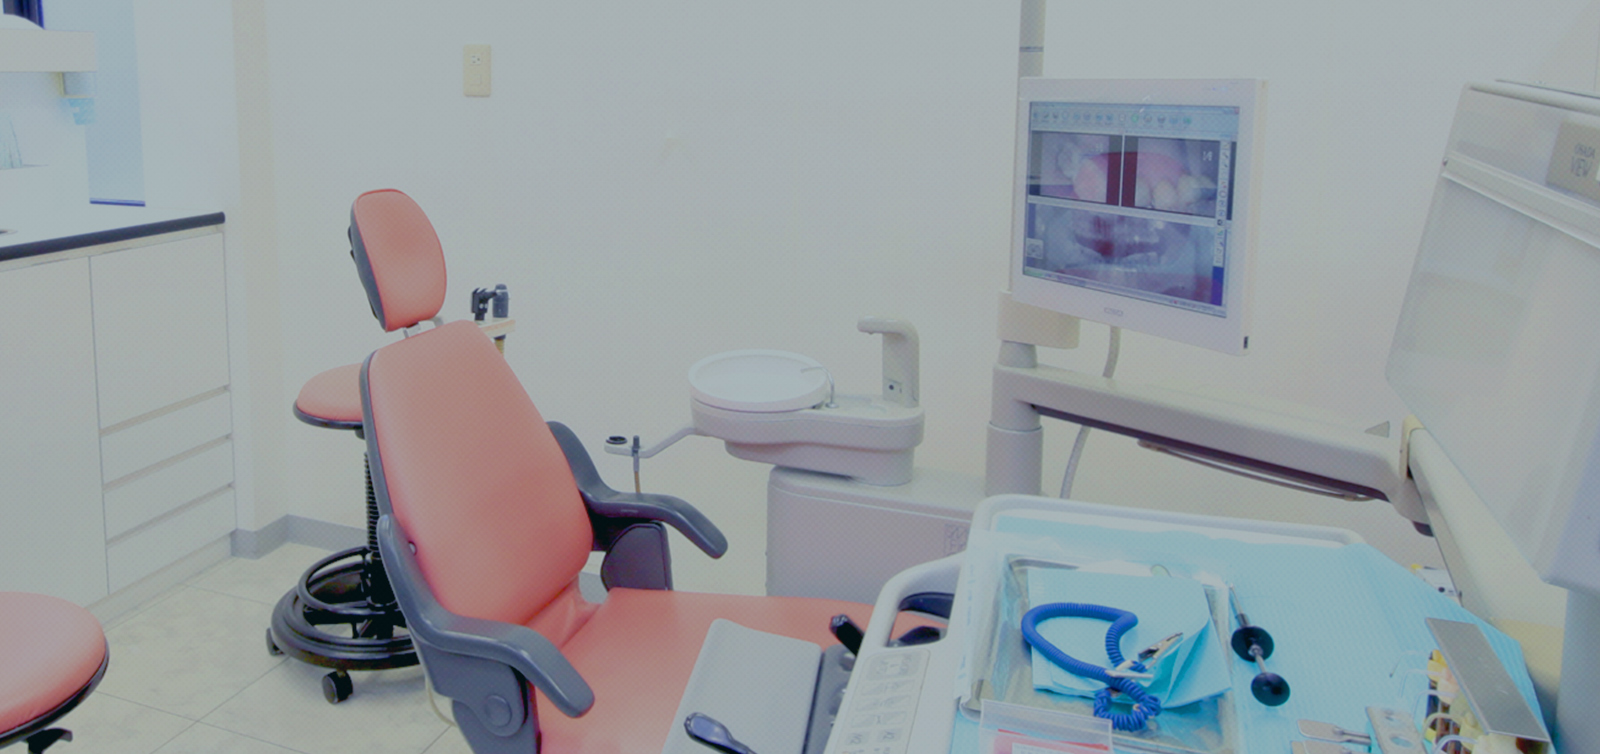 IWAMOTO DENTAL CLINIC 大切な歯を一生残すために いわもと歯科医院で健康な歯をいつまでも